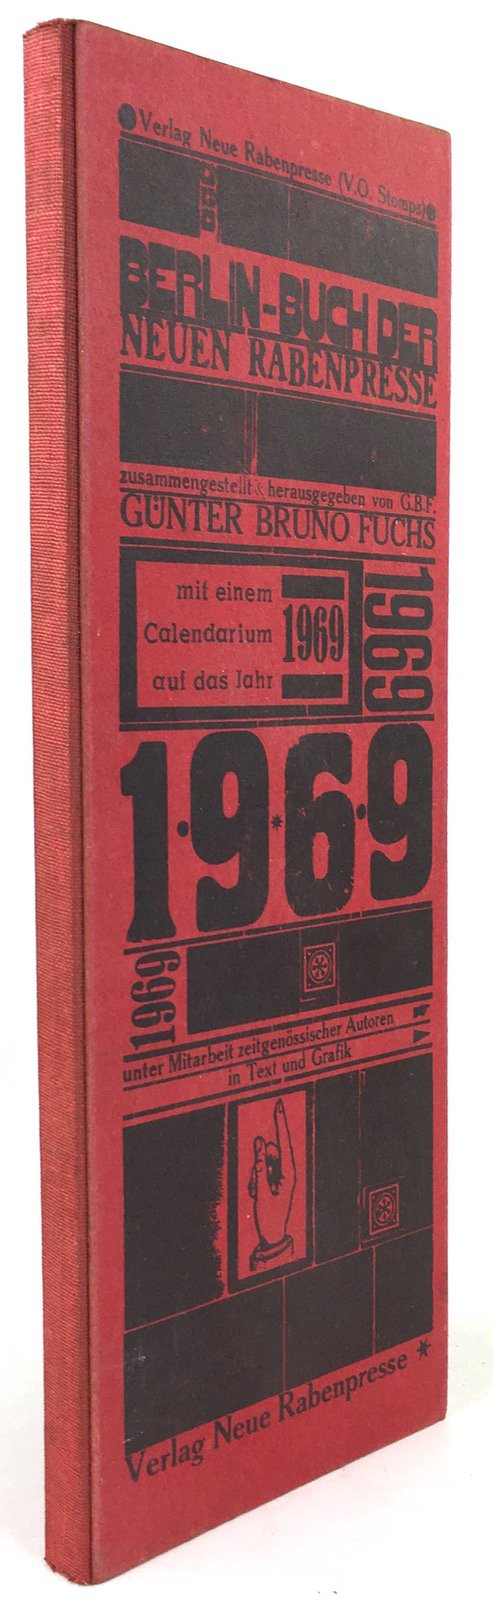 Abbildung von "Berlin - Buch der Neuen Rabenpresse. Unter Mitarbeit zeitgenössischer Autorn in Text und Grafik..."